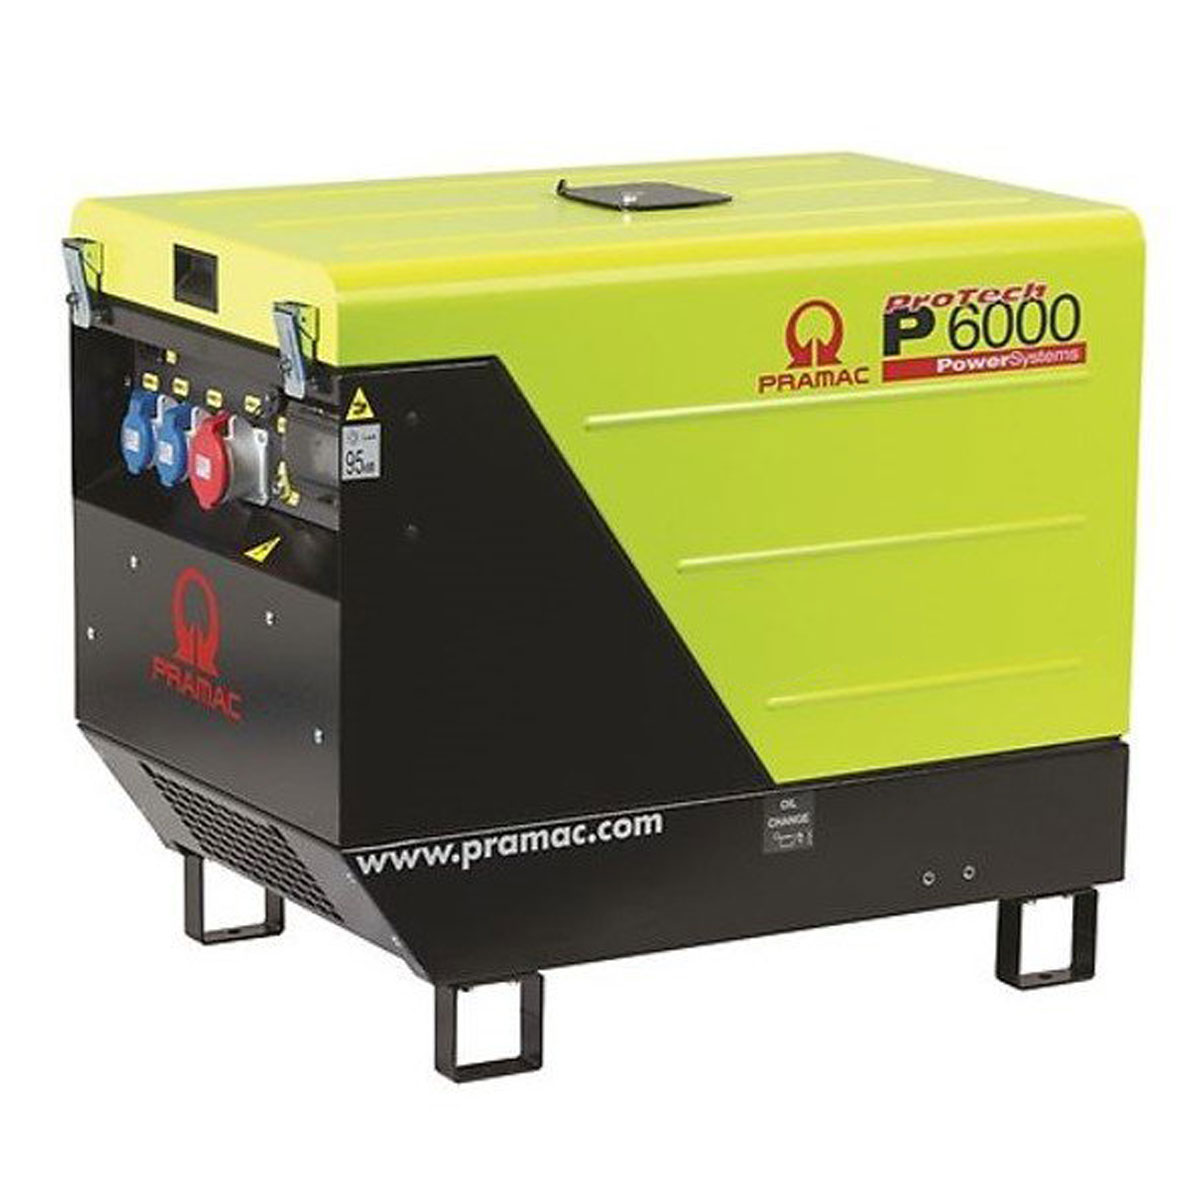 Pramac P6000 Silent Diesel Generator 3-Phase